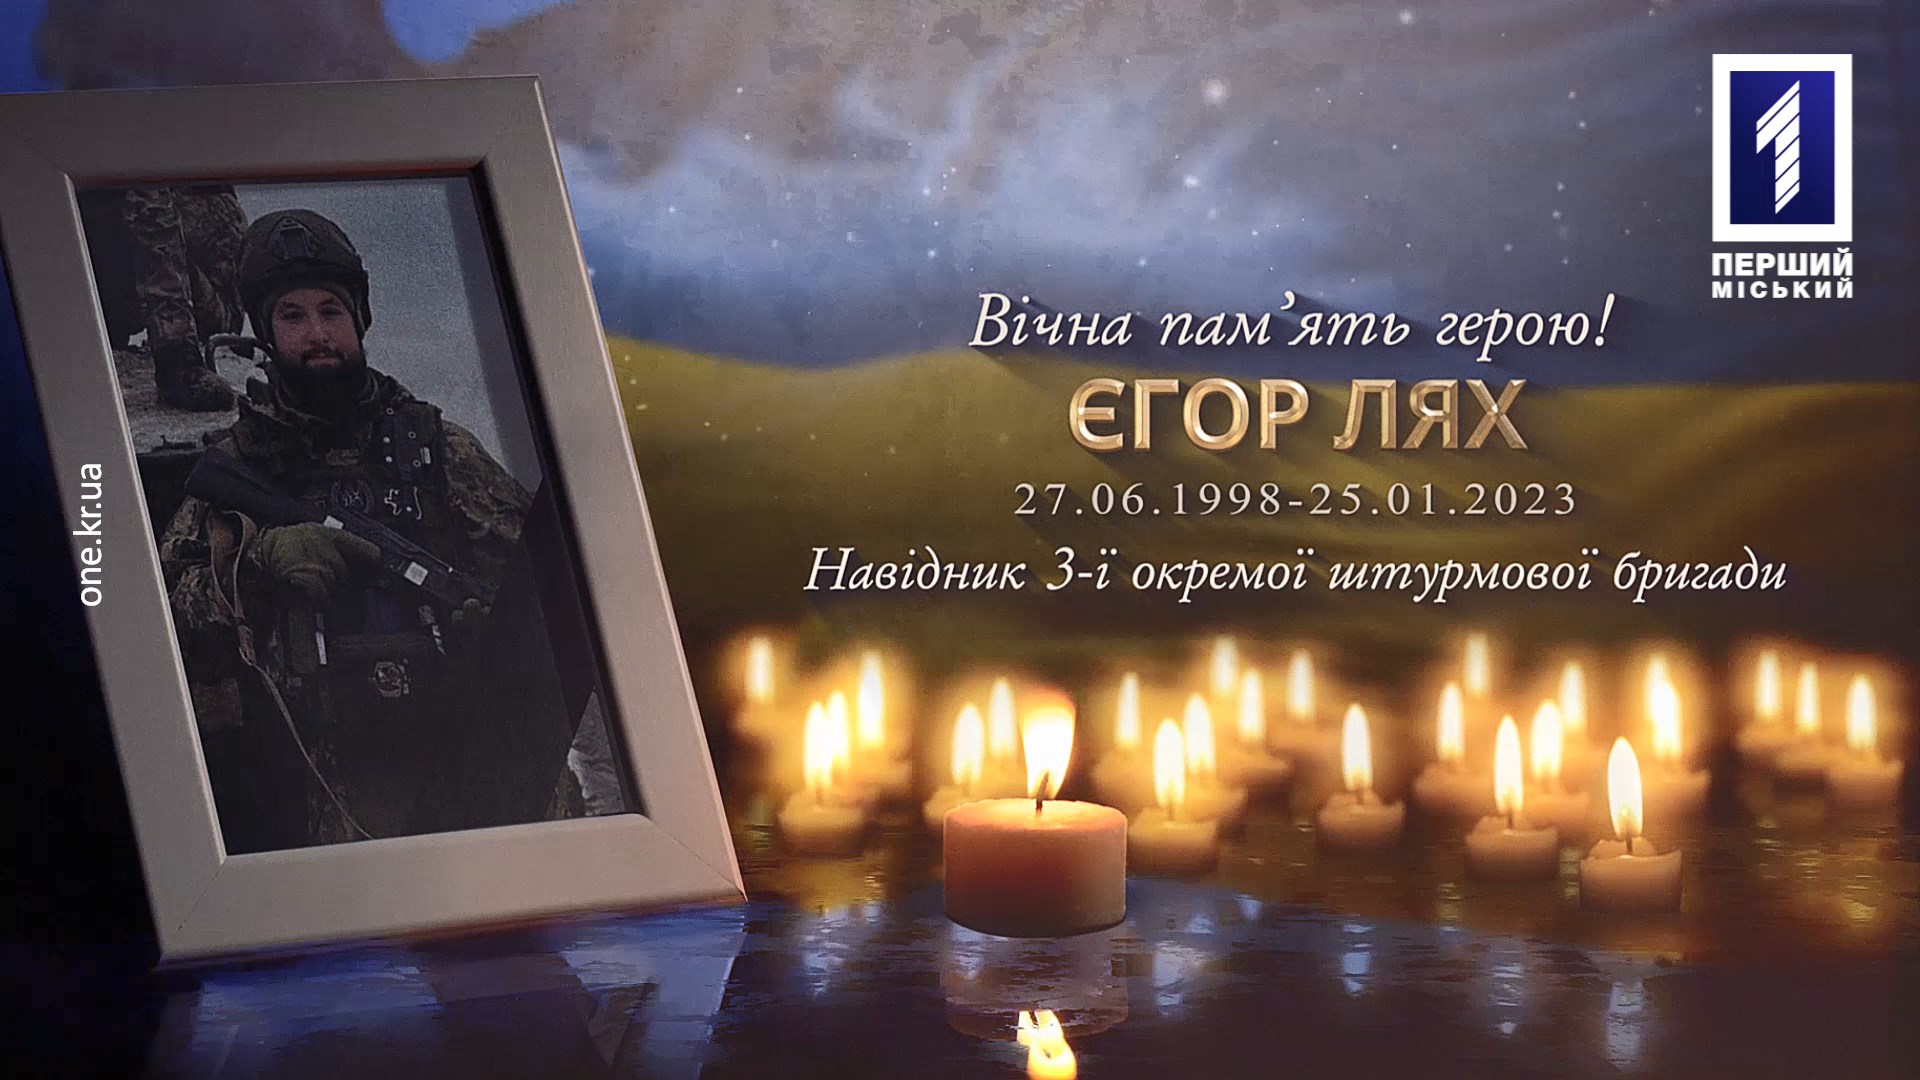 Кривой Рог отдал последнее уважение погибшему Егору Ляху, защищавшему украинские границы